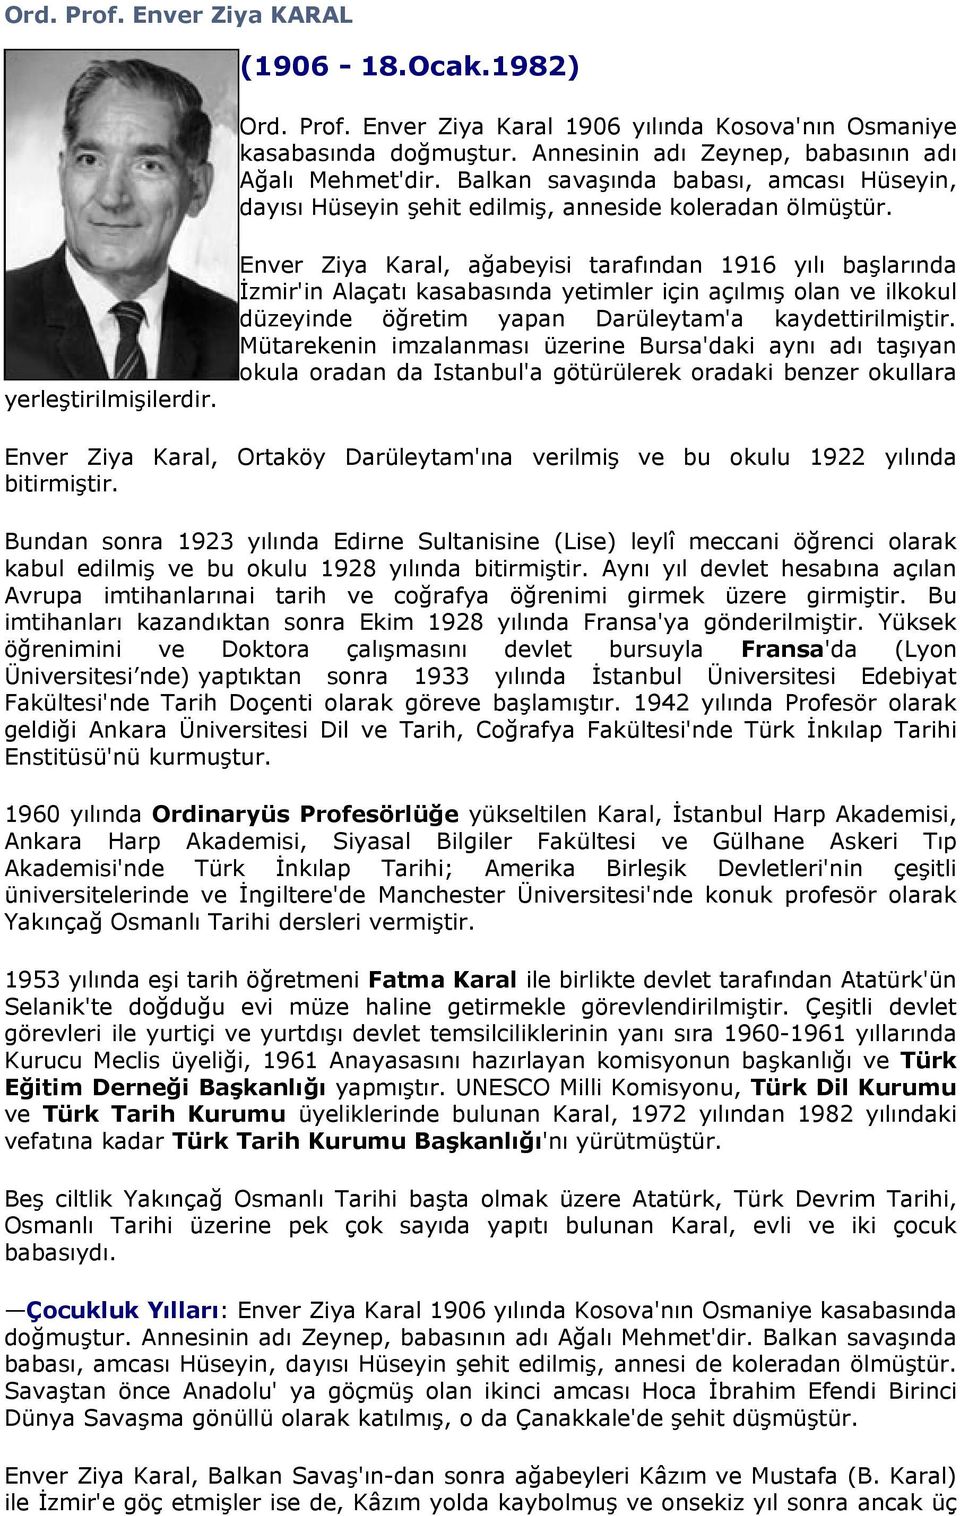 Enver Ziya Karal, ağabeyisi tarafından 1916 yılı başlarında İzmir'in Alaçatı kasabasında yetimler için açılmış olan ve ilkokul düzeyinde öğretim yapan Darüleytam'a kaydettirilmiştir.